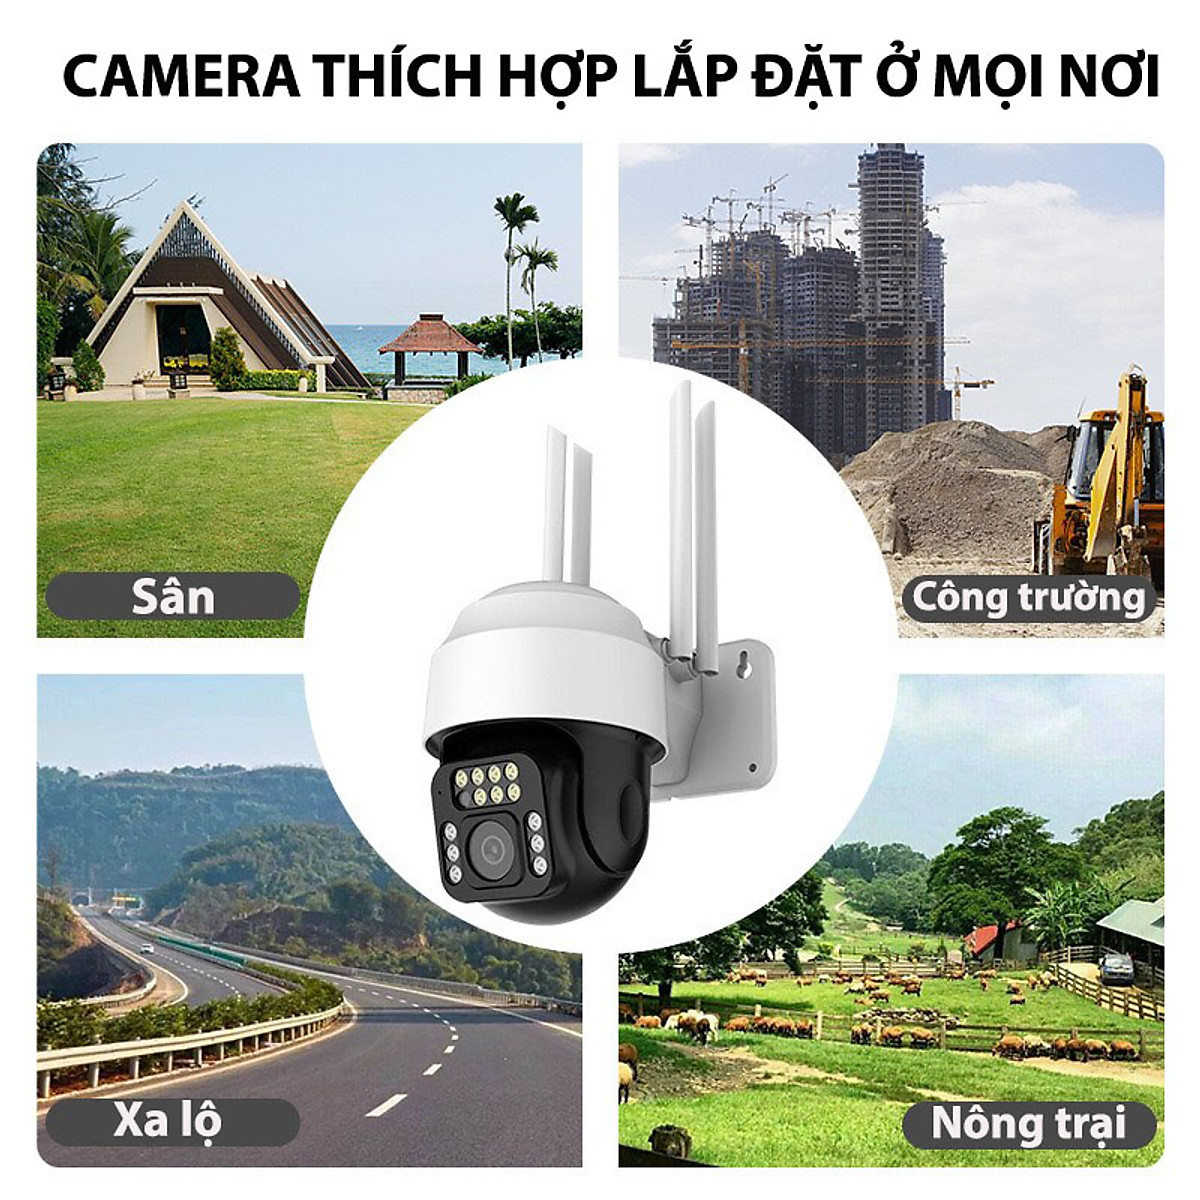 Camera Wifi Yoosee 5.0 Mpx Full HD, Dòng Ngoài Trời Xoay 360°,C12 Xem Đêm Có Màu-Đàm Thoại 2 Chiều-Phát Hiện Chuyển Động Chống Trộm-Hàng Nhập Khẩu